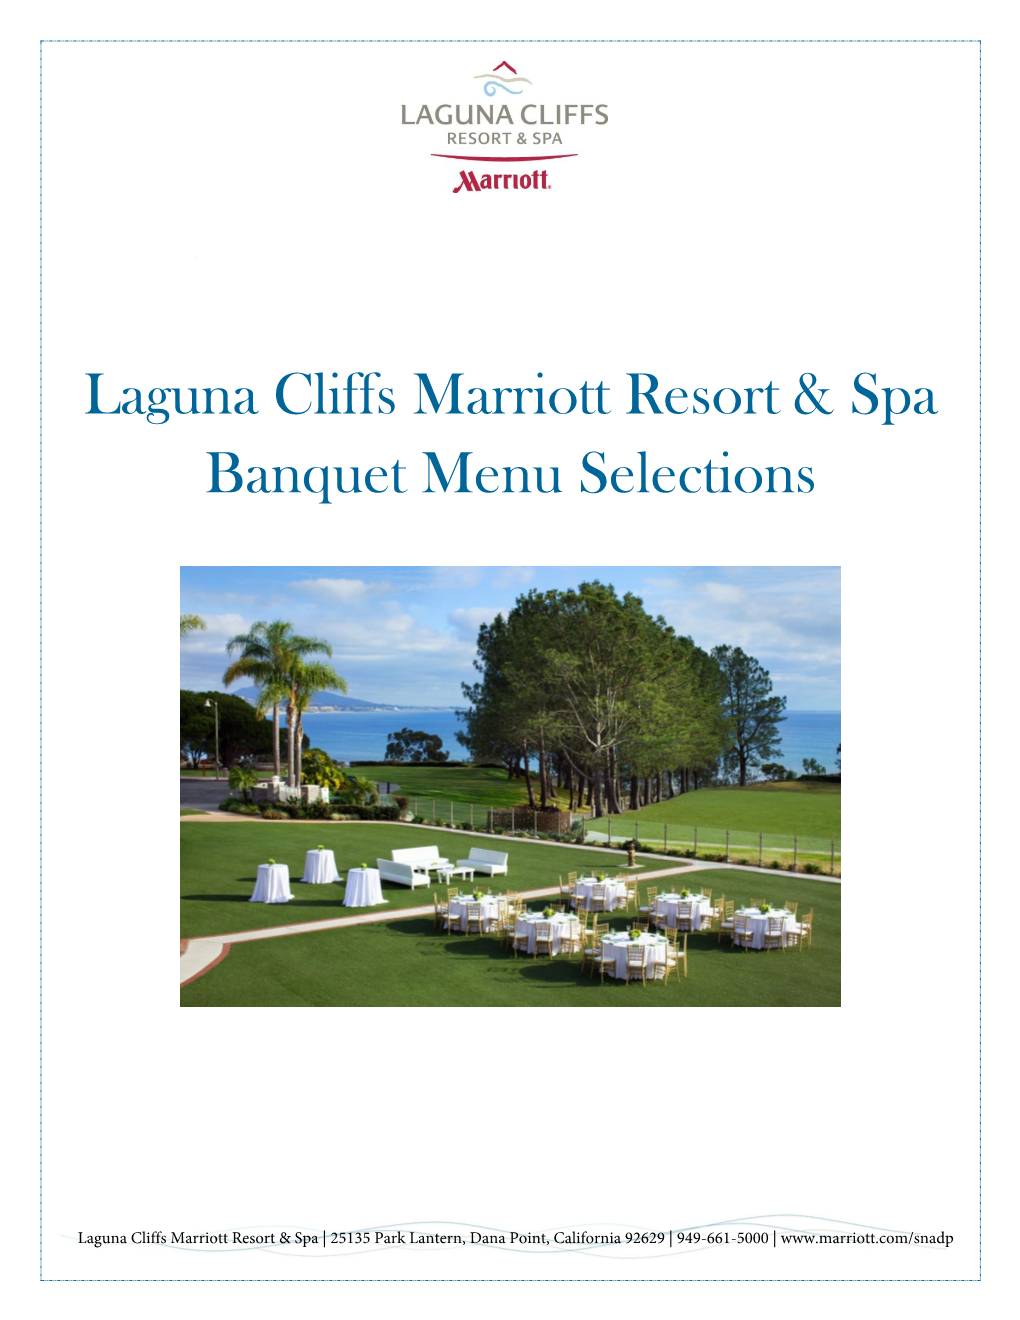 Laguna Cliffs Marriott Resort & Spa Banquet Menu Selections